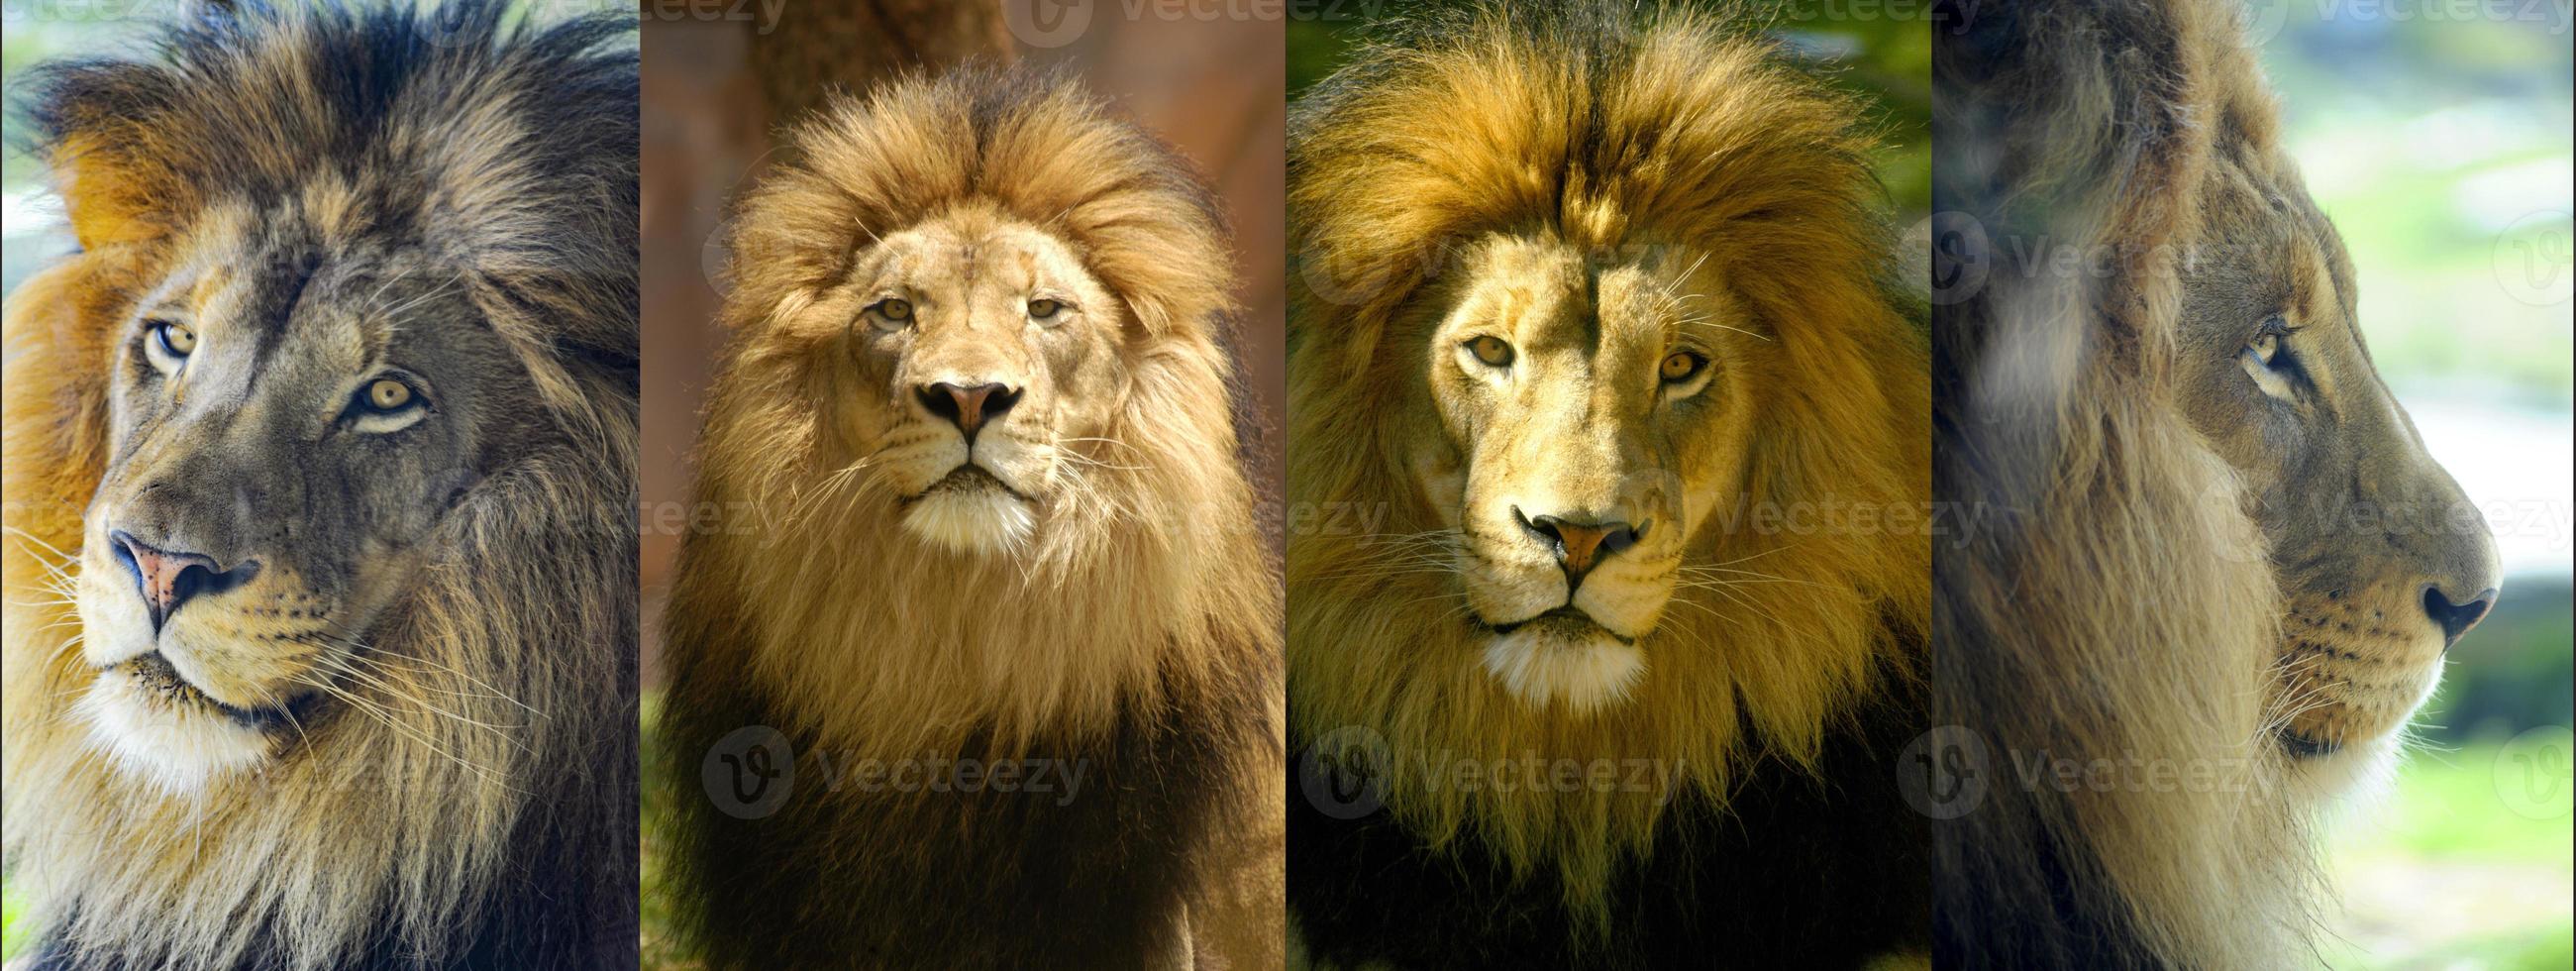 König der Löwen Porträtmontage foto